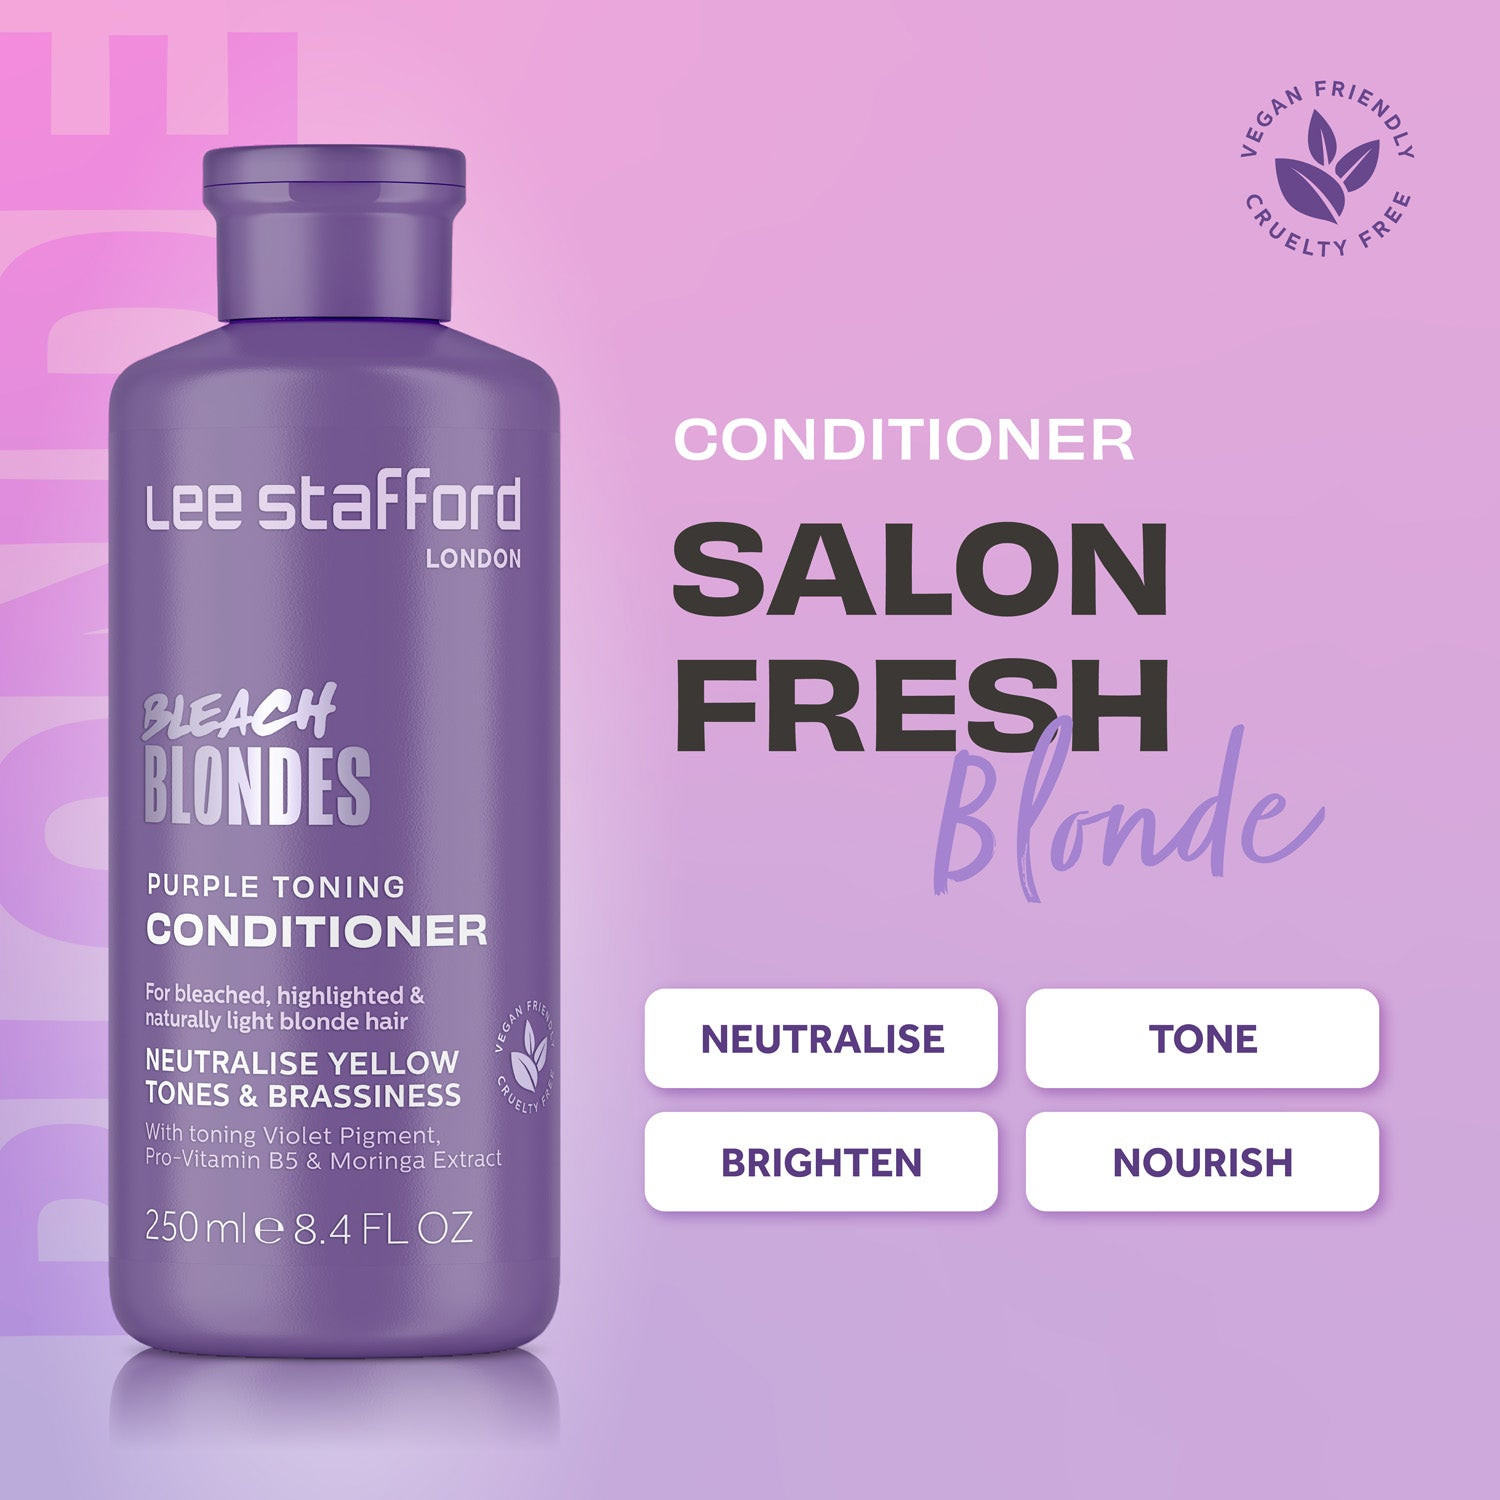 Тонирующий фиолетовый кондиционер для осветленных волос Lee Stafford Bleach Blondes Purple Toning Conditioner